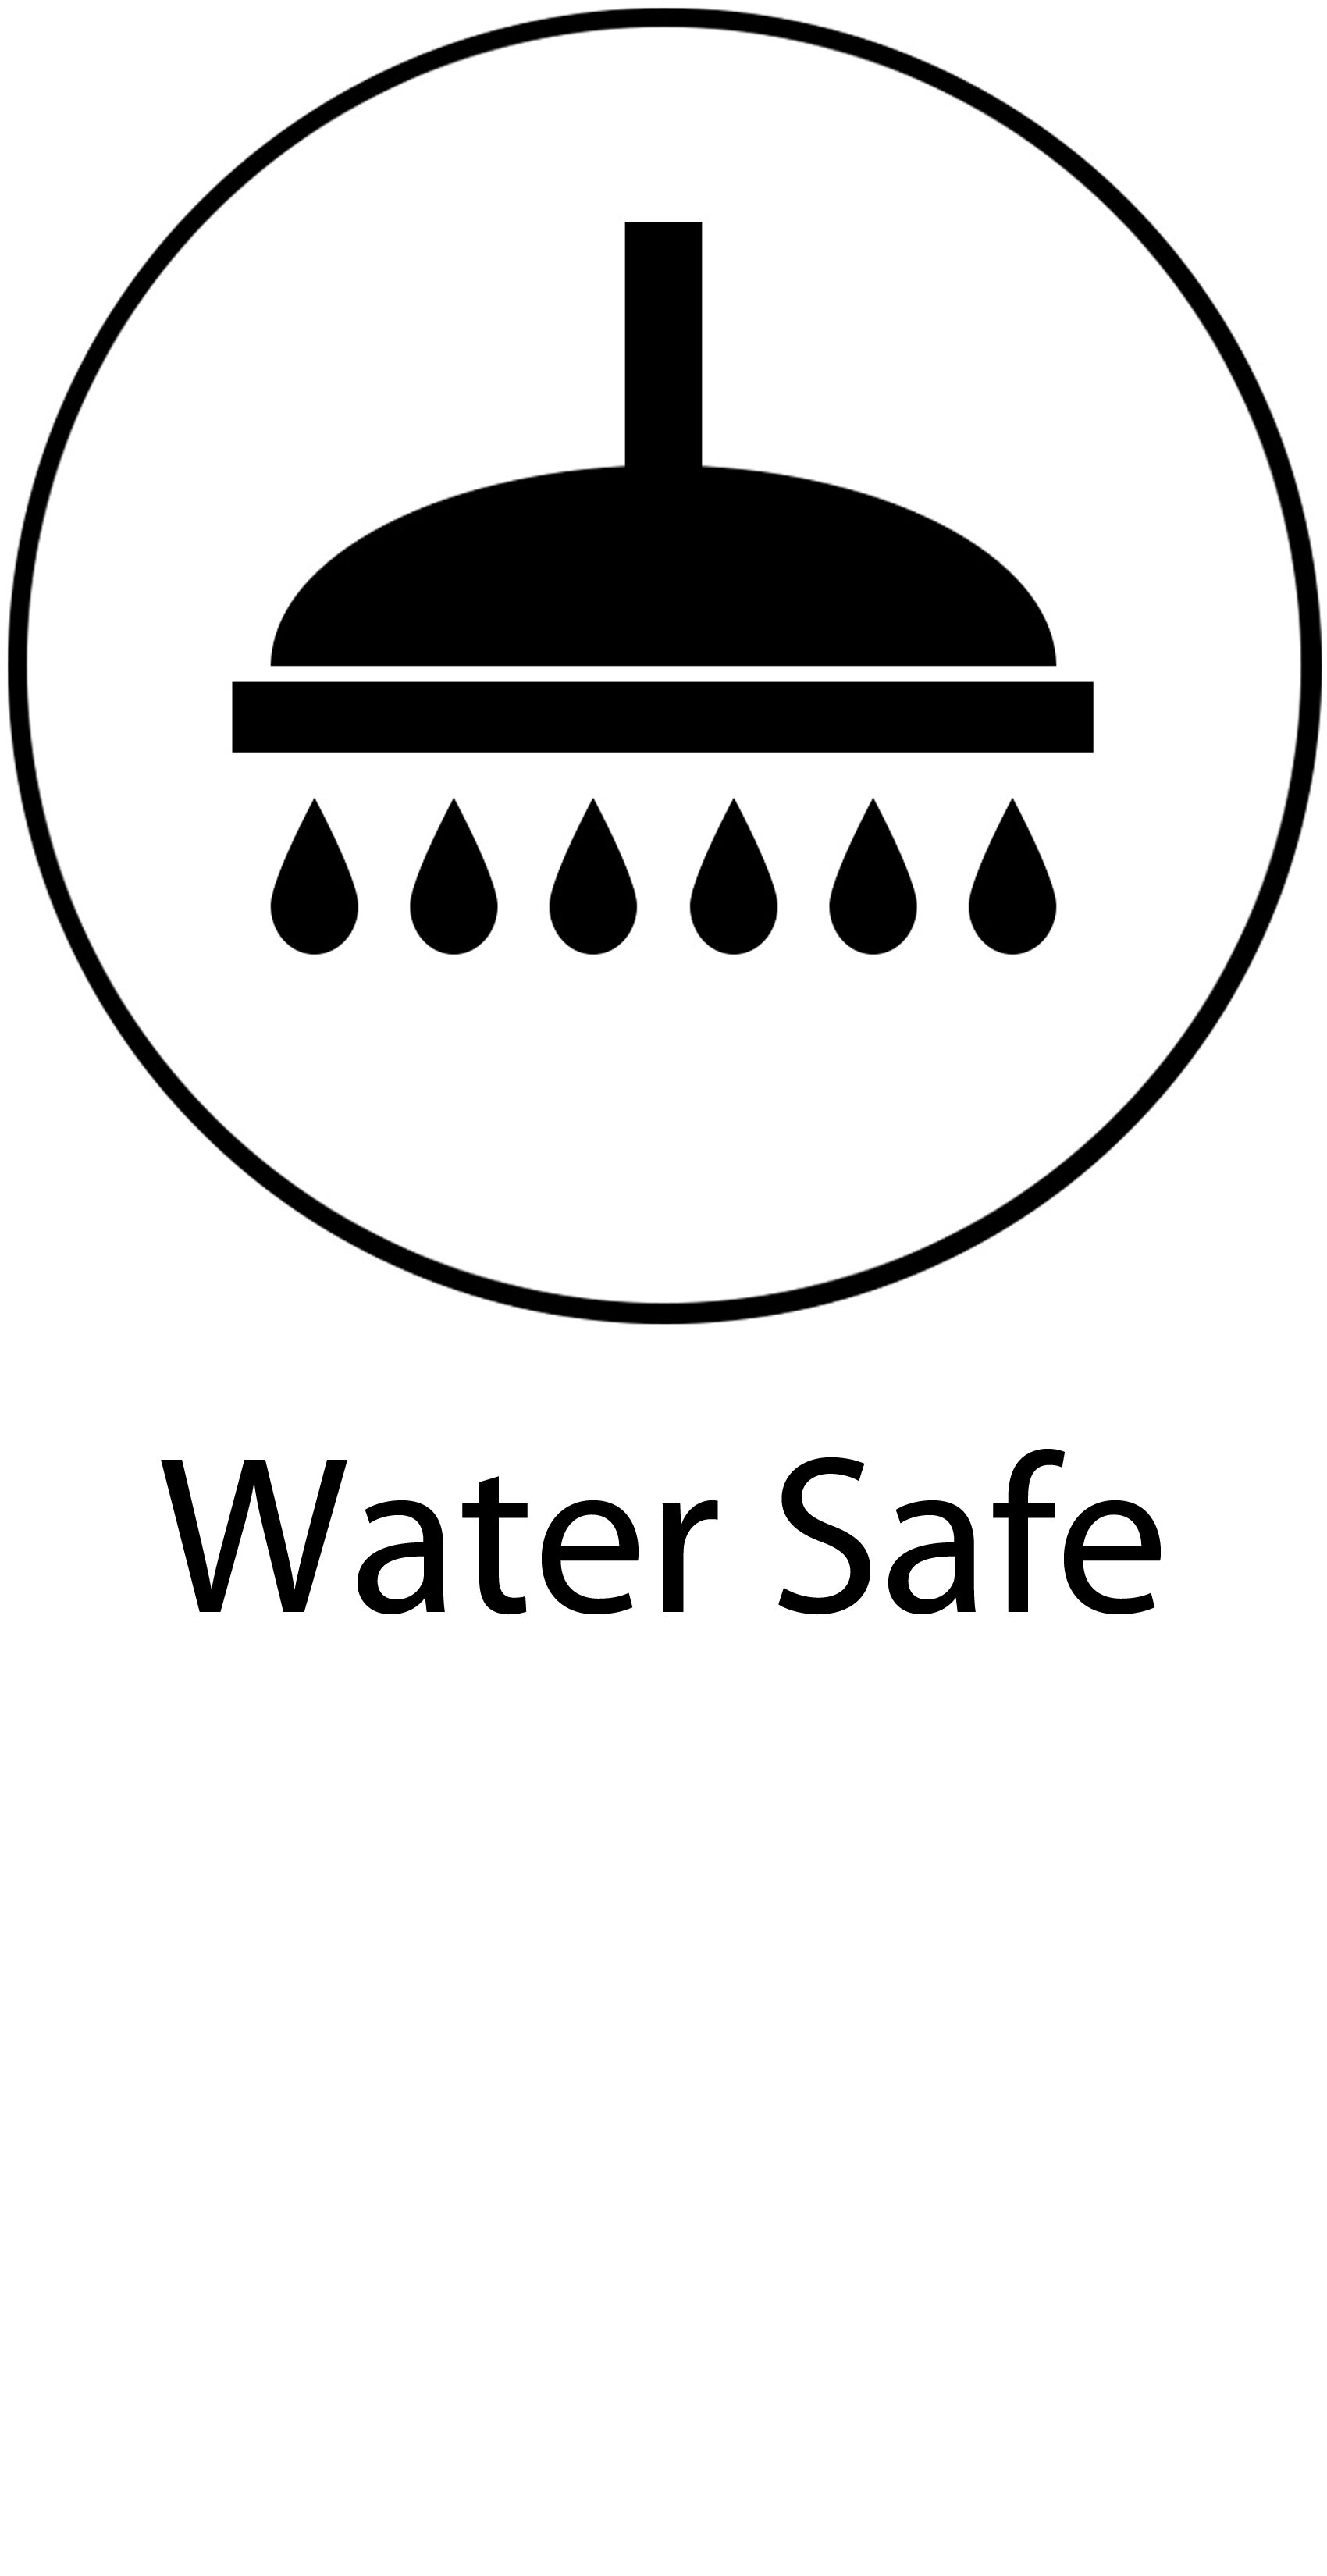 06_Water Safe.jpg